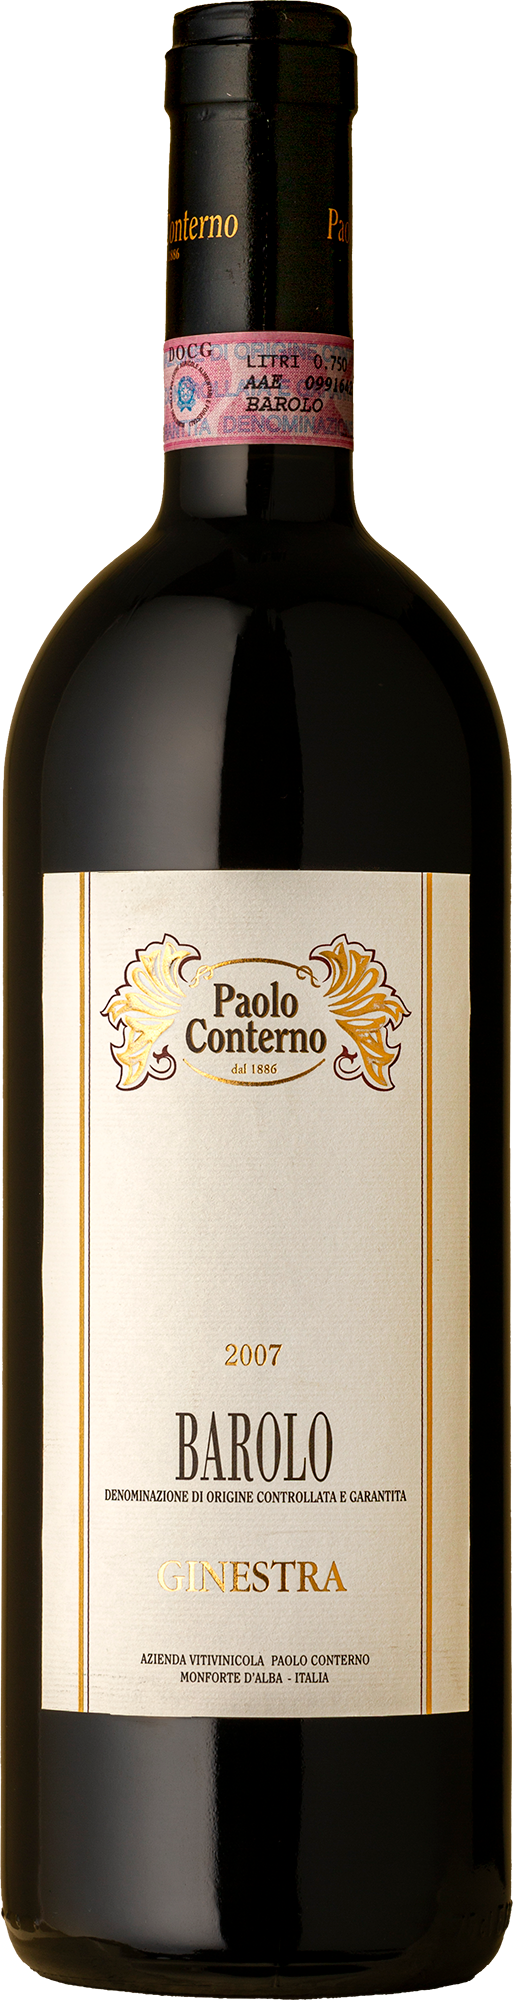 Paolo Conterno - Barolo Ginestra Nebbiolo 2007 Red Wine